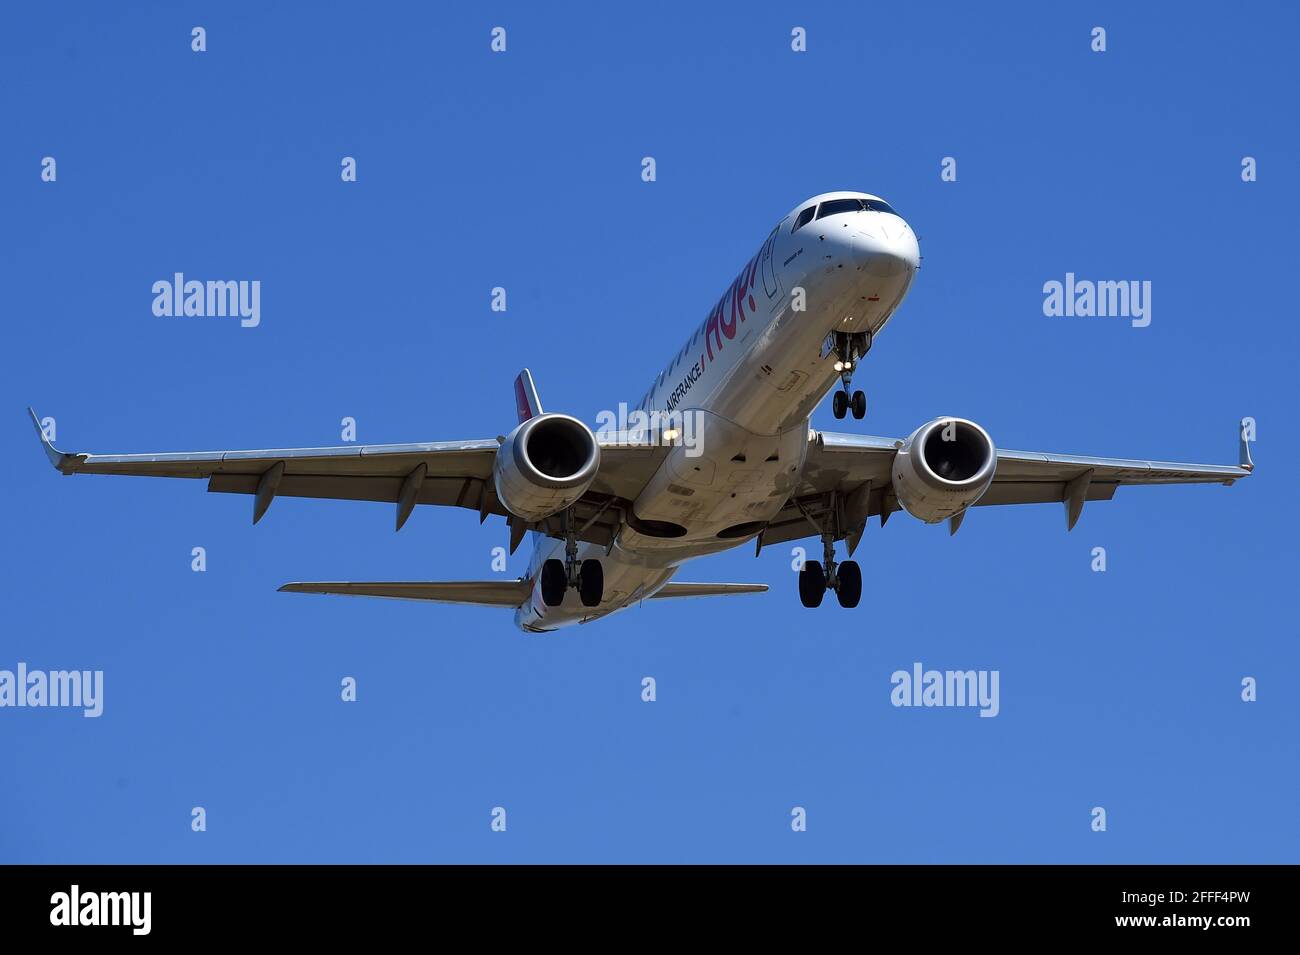 Hop Airline Stockfotos und -bilder Kaufen - Alamy